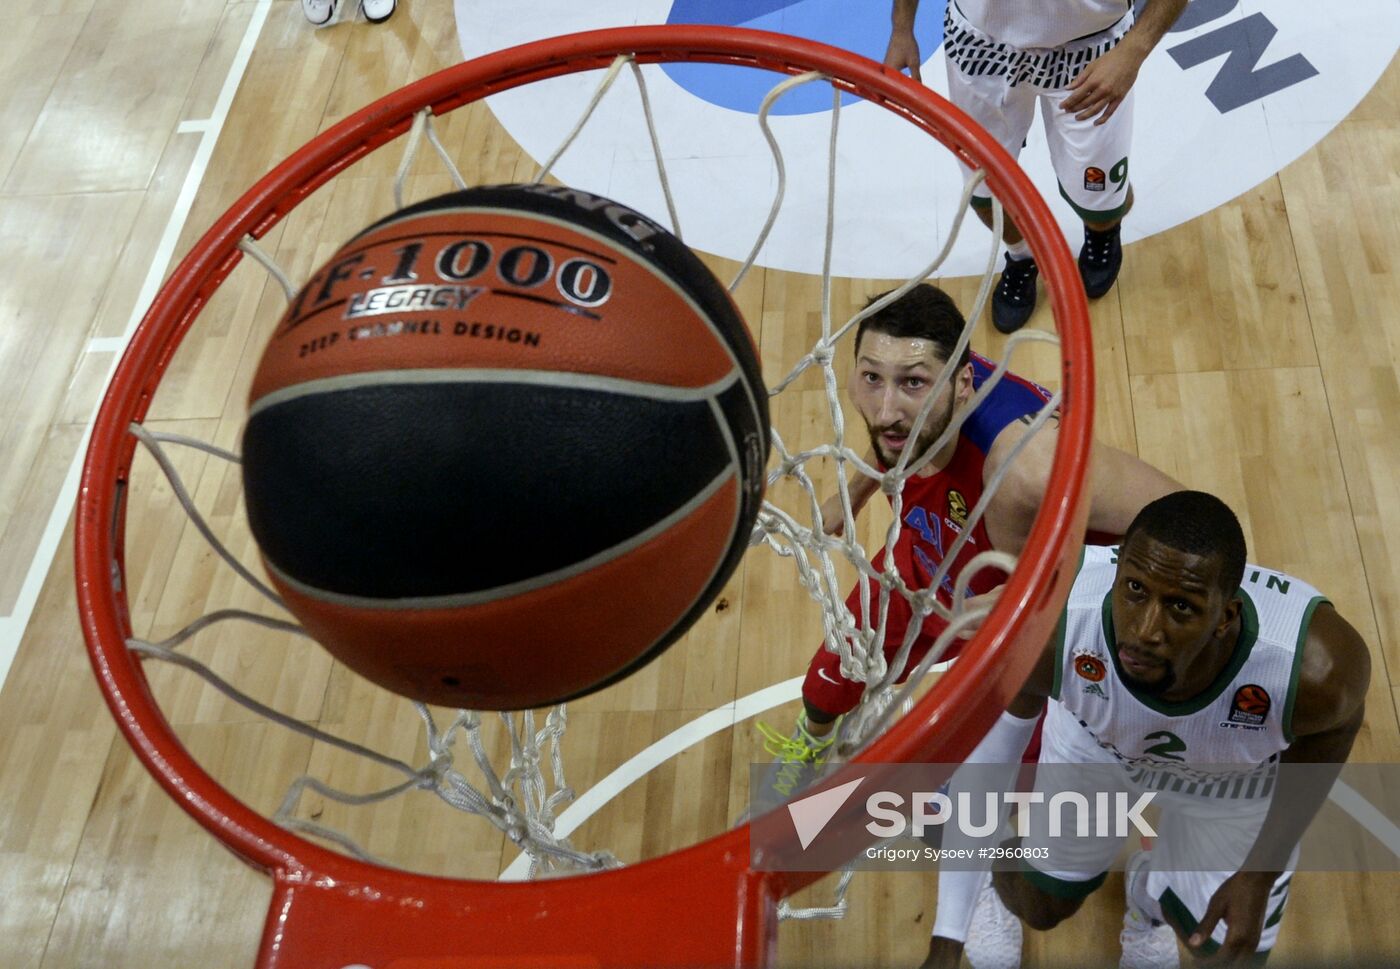 Basketball. Euroleague. CSKA vs Panathinaikos